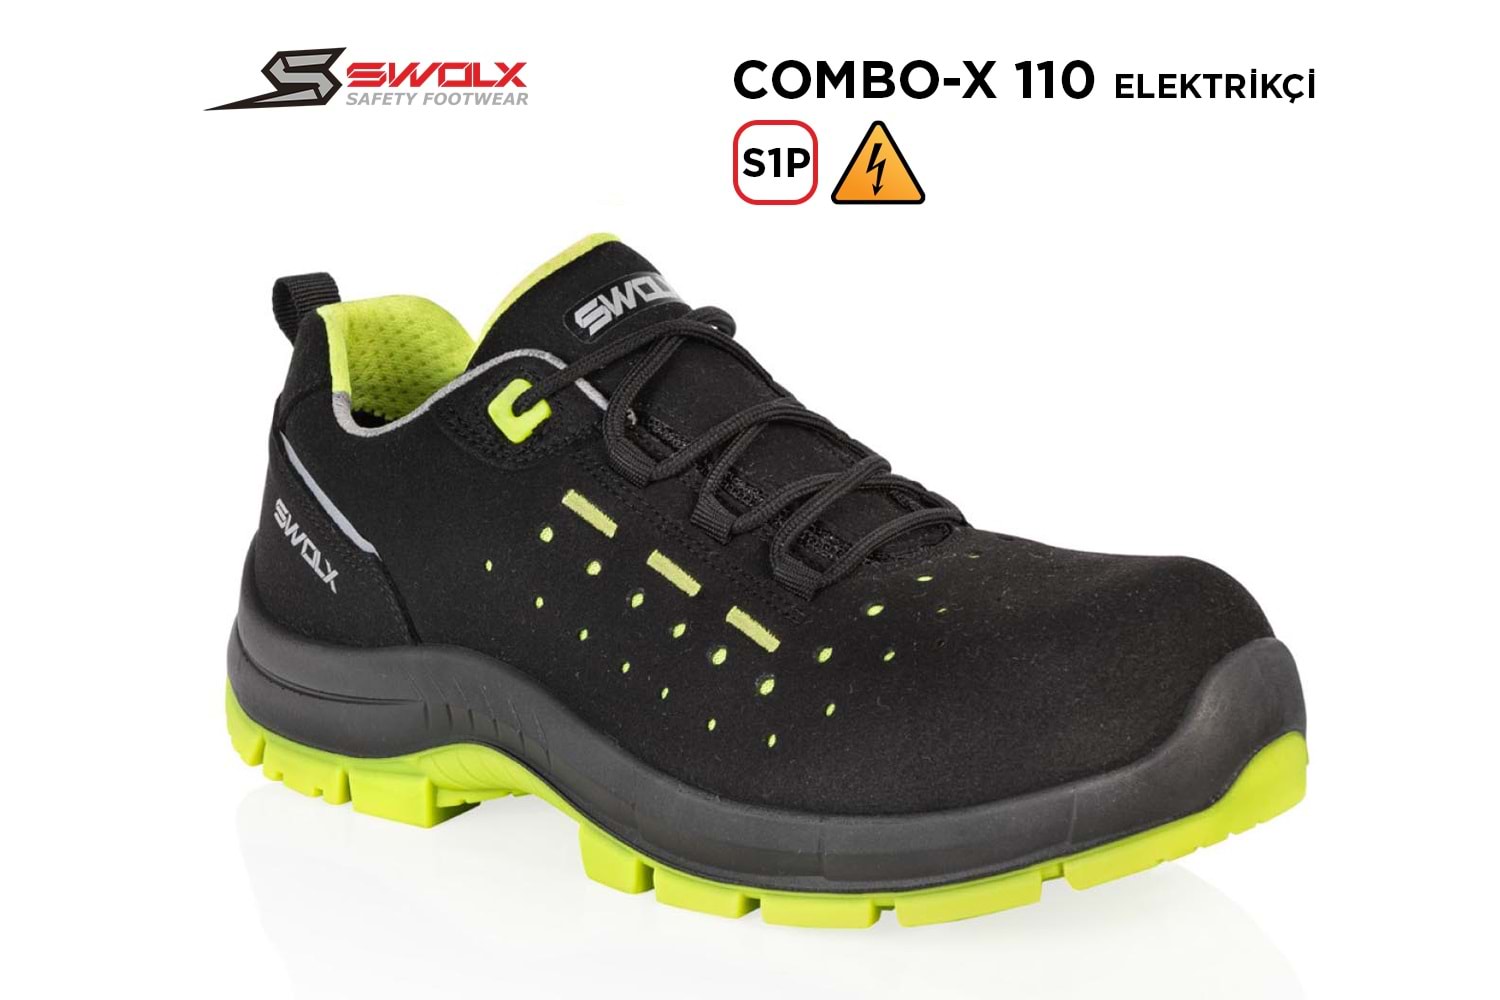 Swolx İş Ayakkabısı - Combo-X 110 S1P Elektrikçi - 43